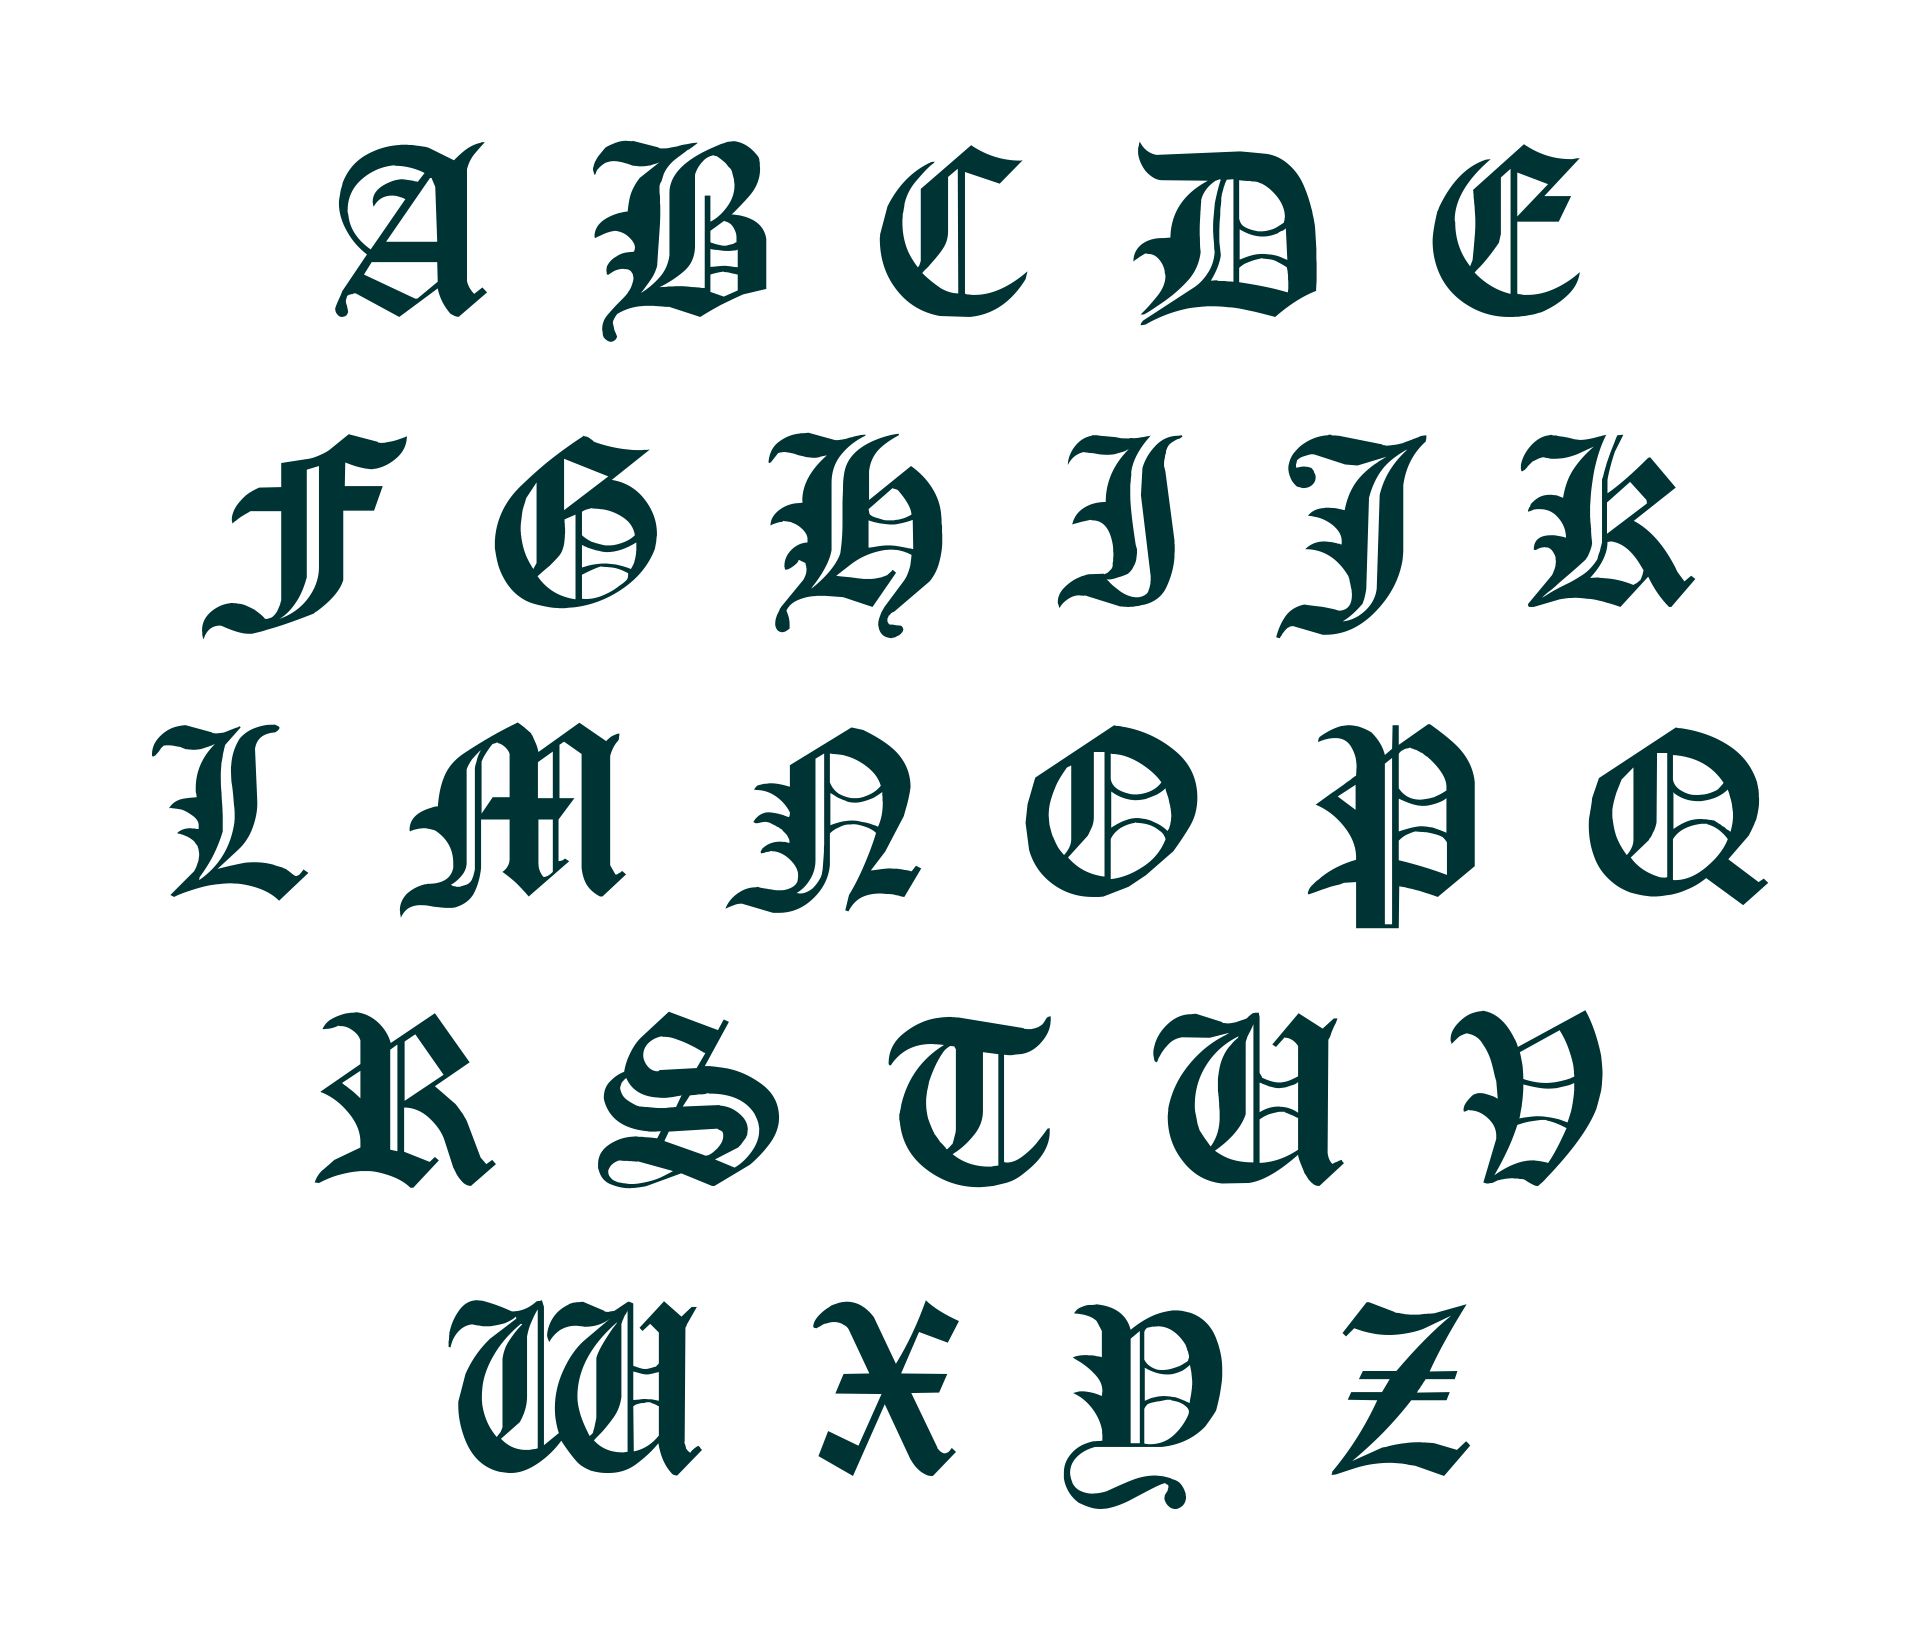 Old English Letters Images - KibrisPDR